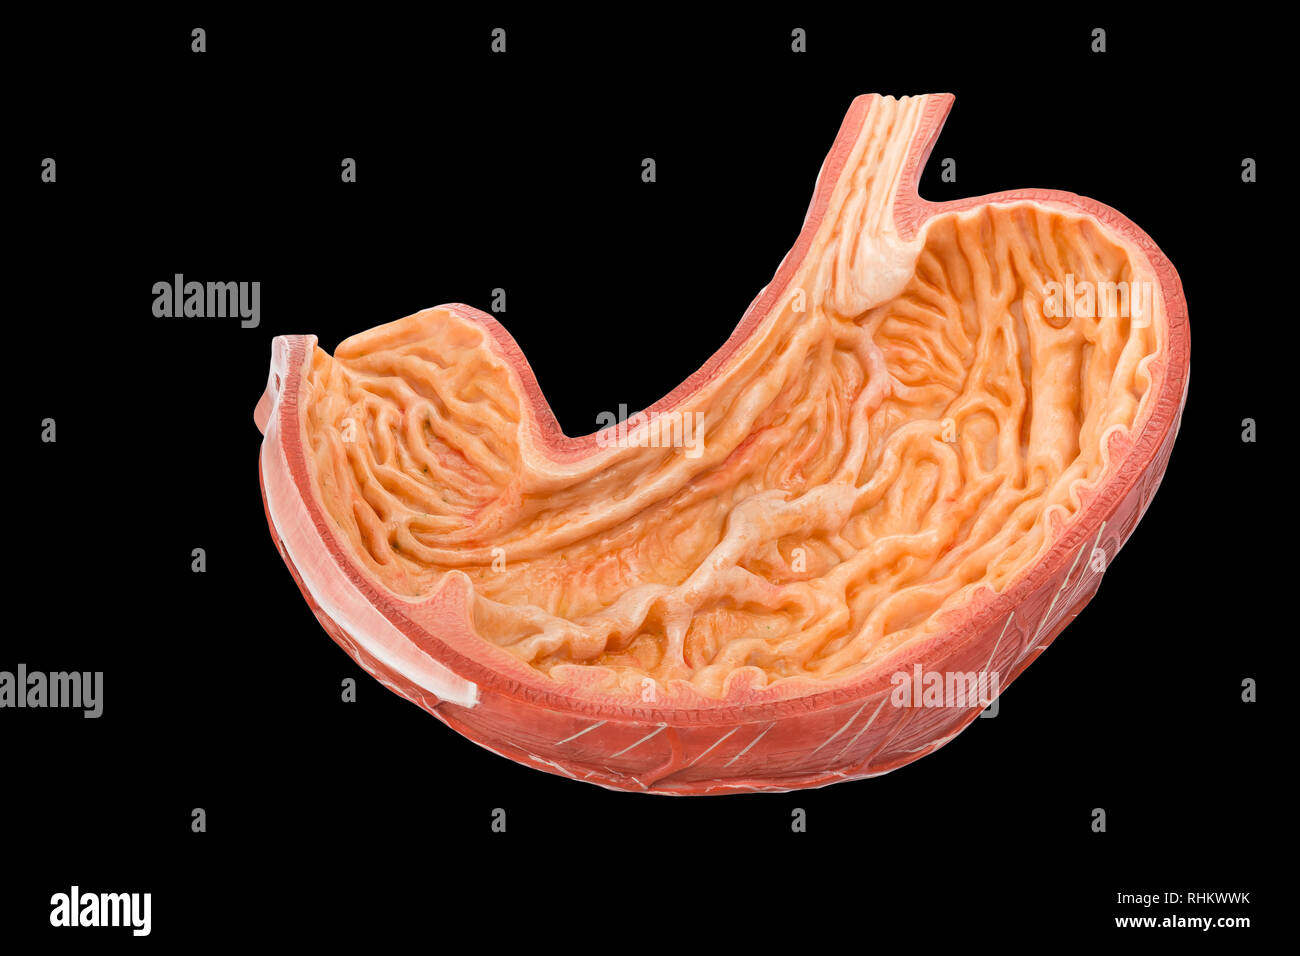 Modell innerhalb der menschlichen Magen auf schwarzem Hintergrund Stockfoto